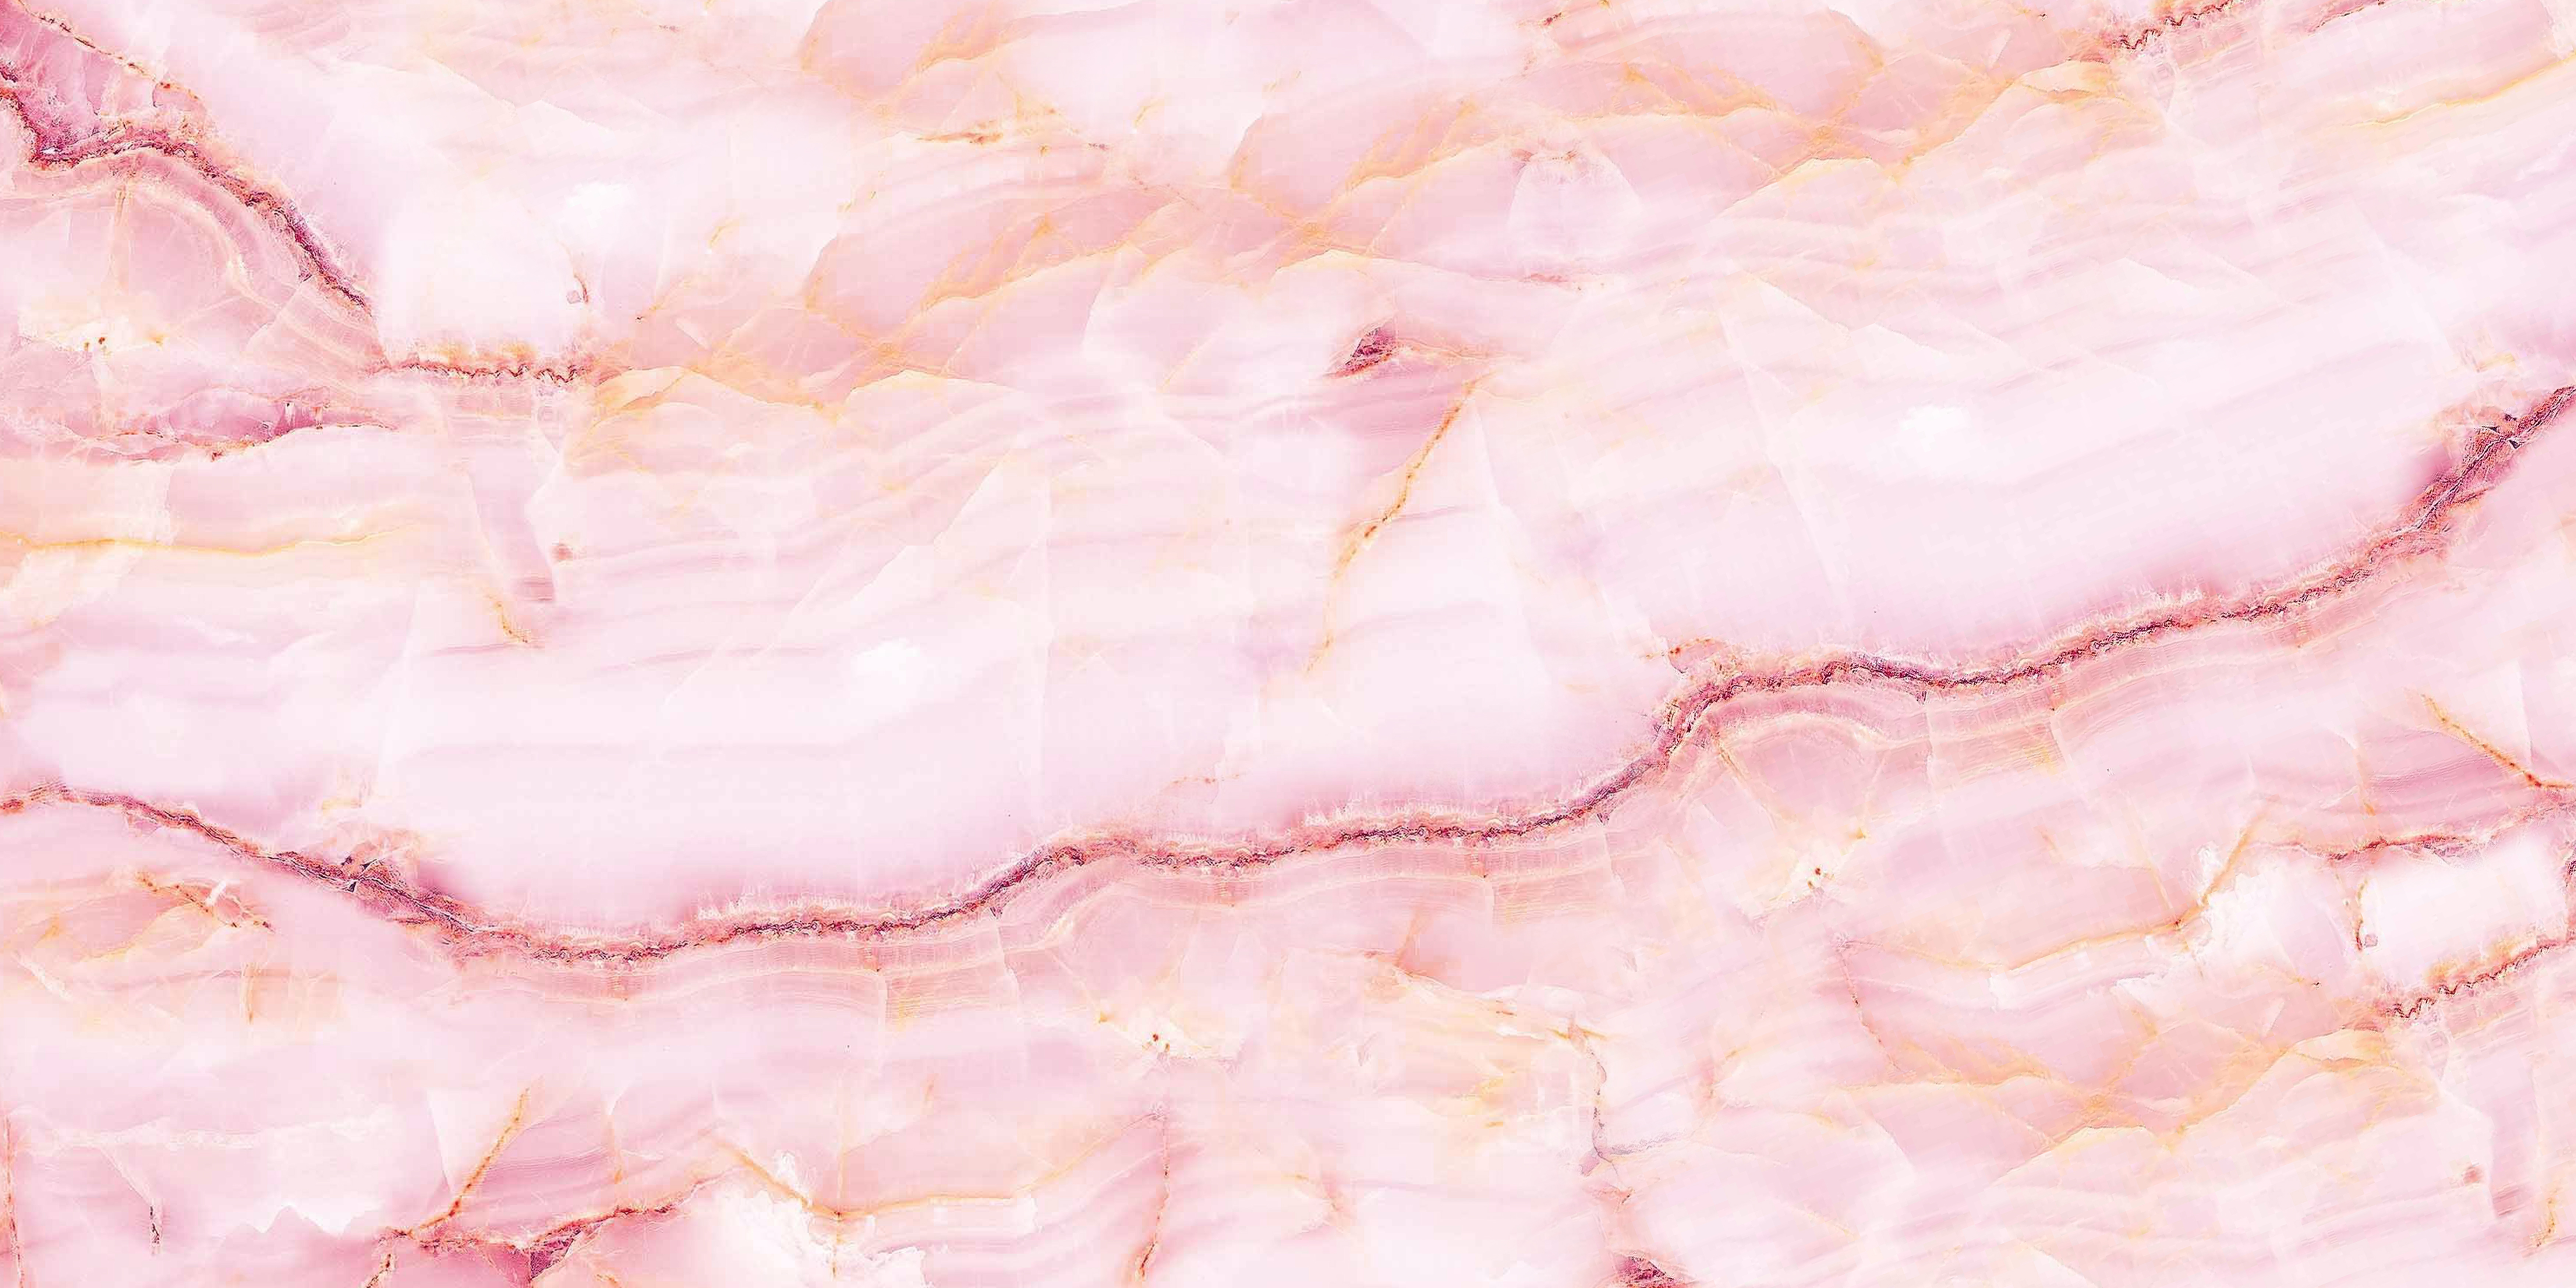 Một bộ sưu tập hình ảnh đá marble màu hồng pha vàng miễn phí sẽ là món quà vô giá dành cho những người yêu thích sự sang trọng và đẳng cấp. Hãy tải về và khám phá những khả năng tuyệt vời mà đá marble mang lại!